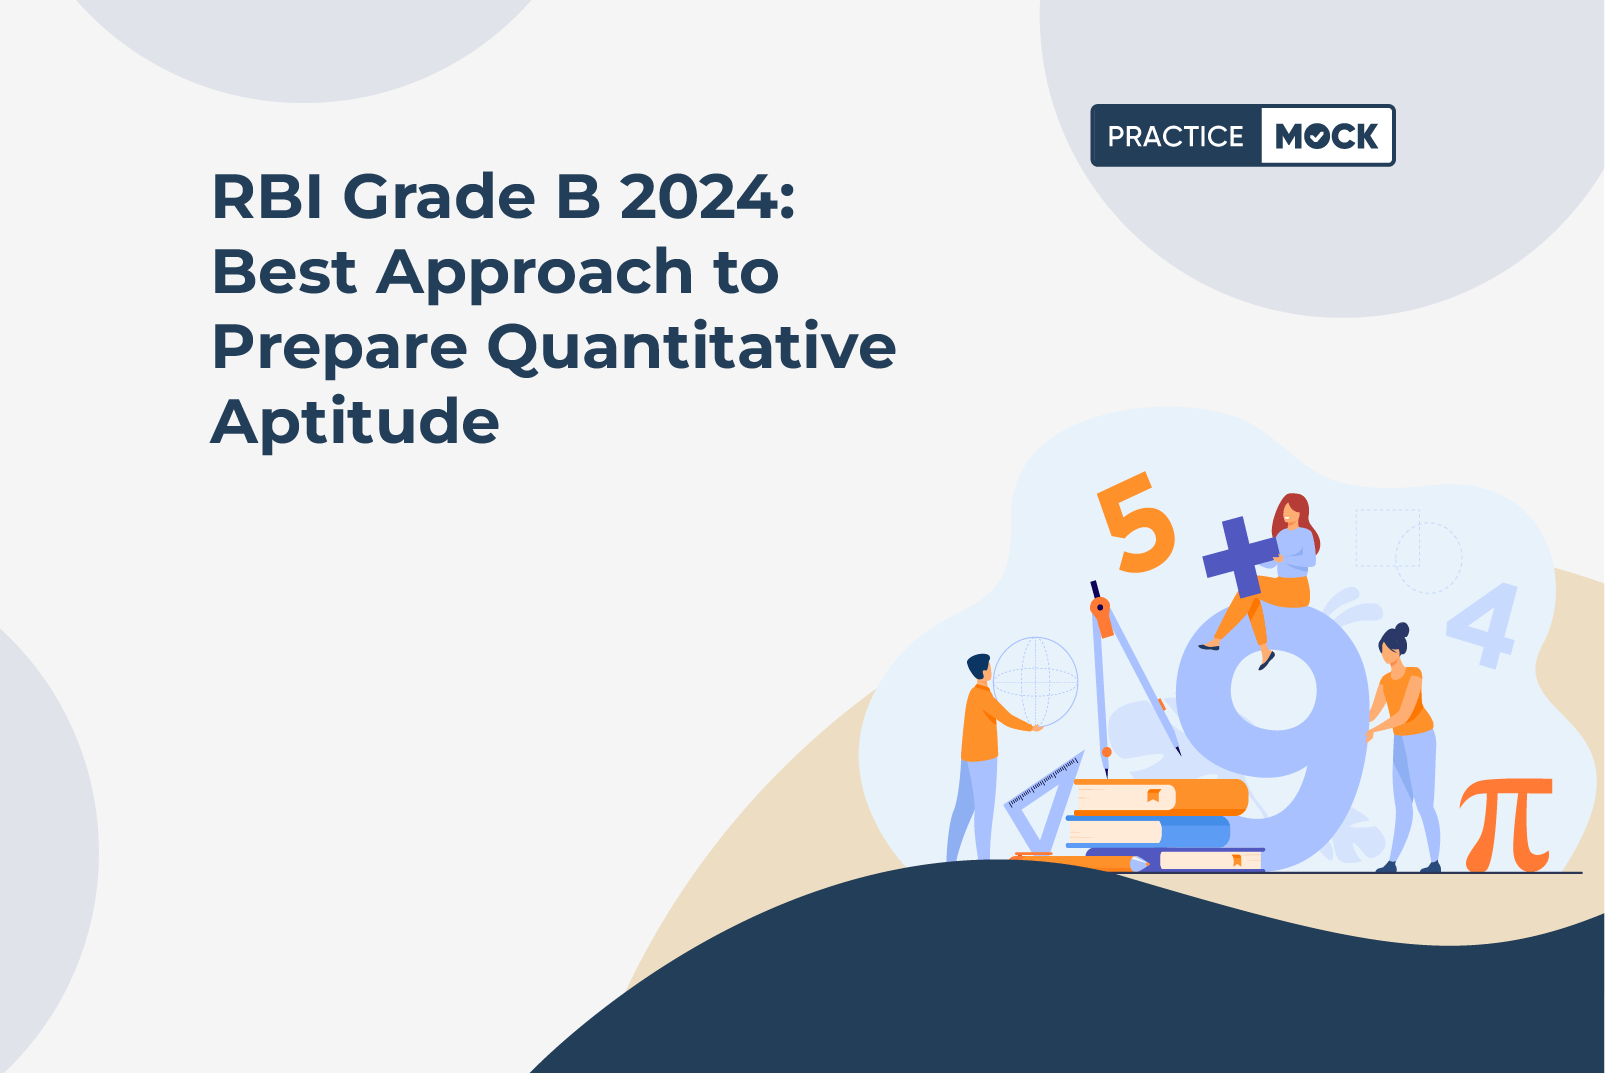 RBI Grade B 2024 Best Approach to Prepare Quantitative Aptitude